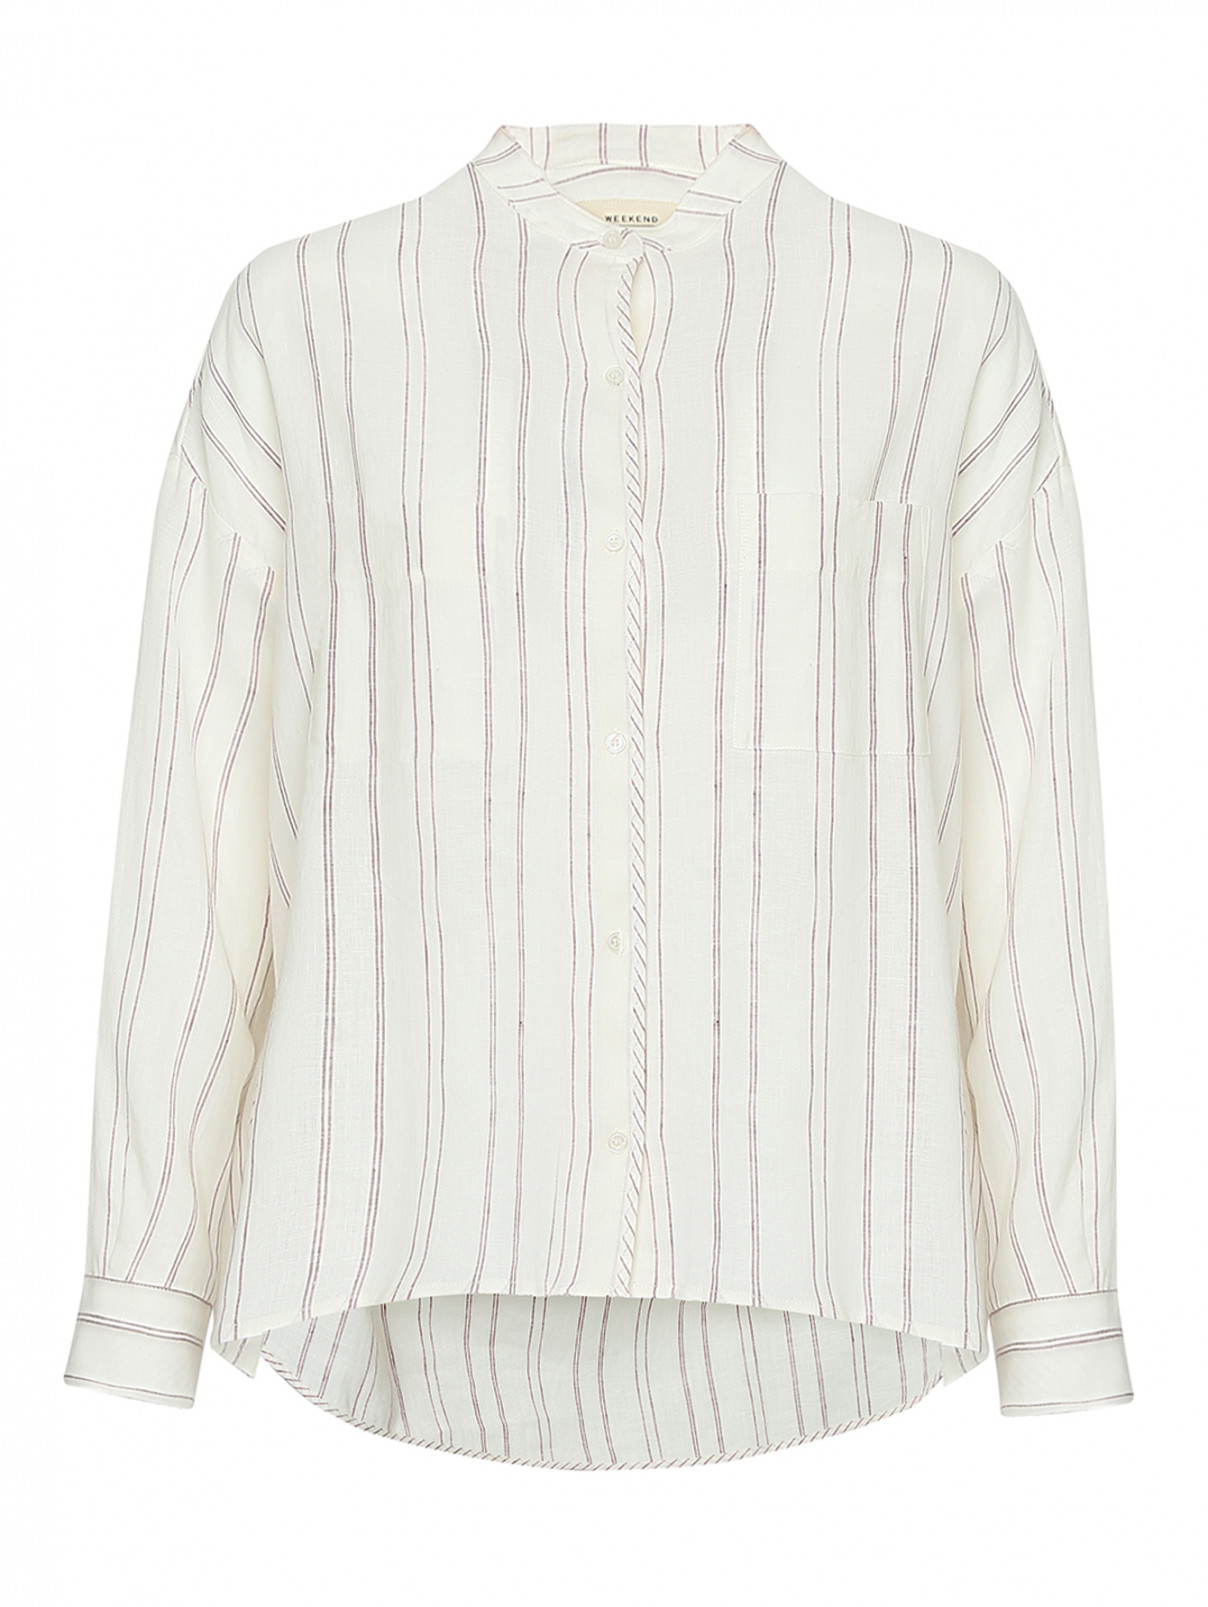 Рубашка изо льна, с узором полоска Weekend Max Mara  –  Общий вид  – Цвет:  Белый